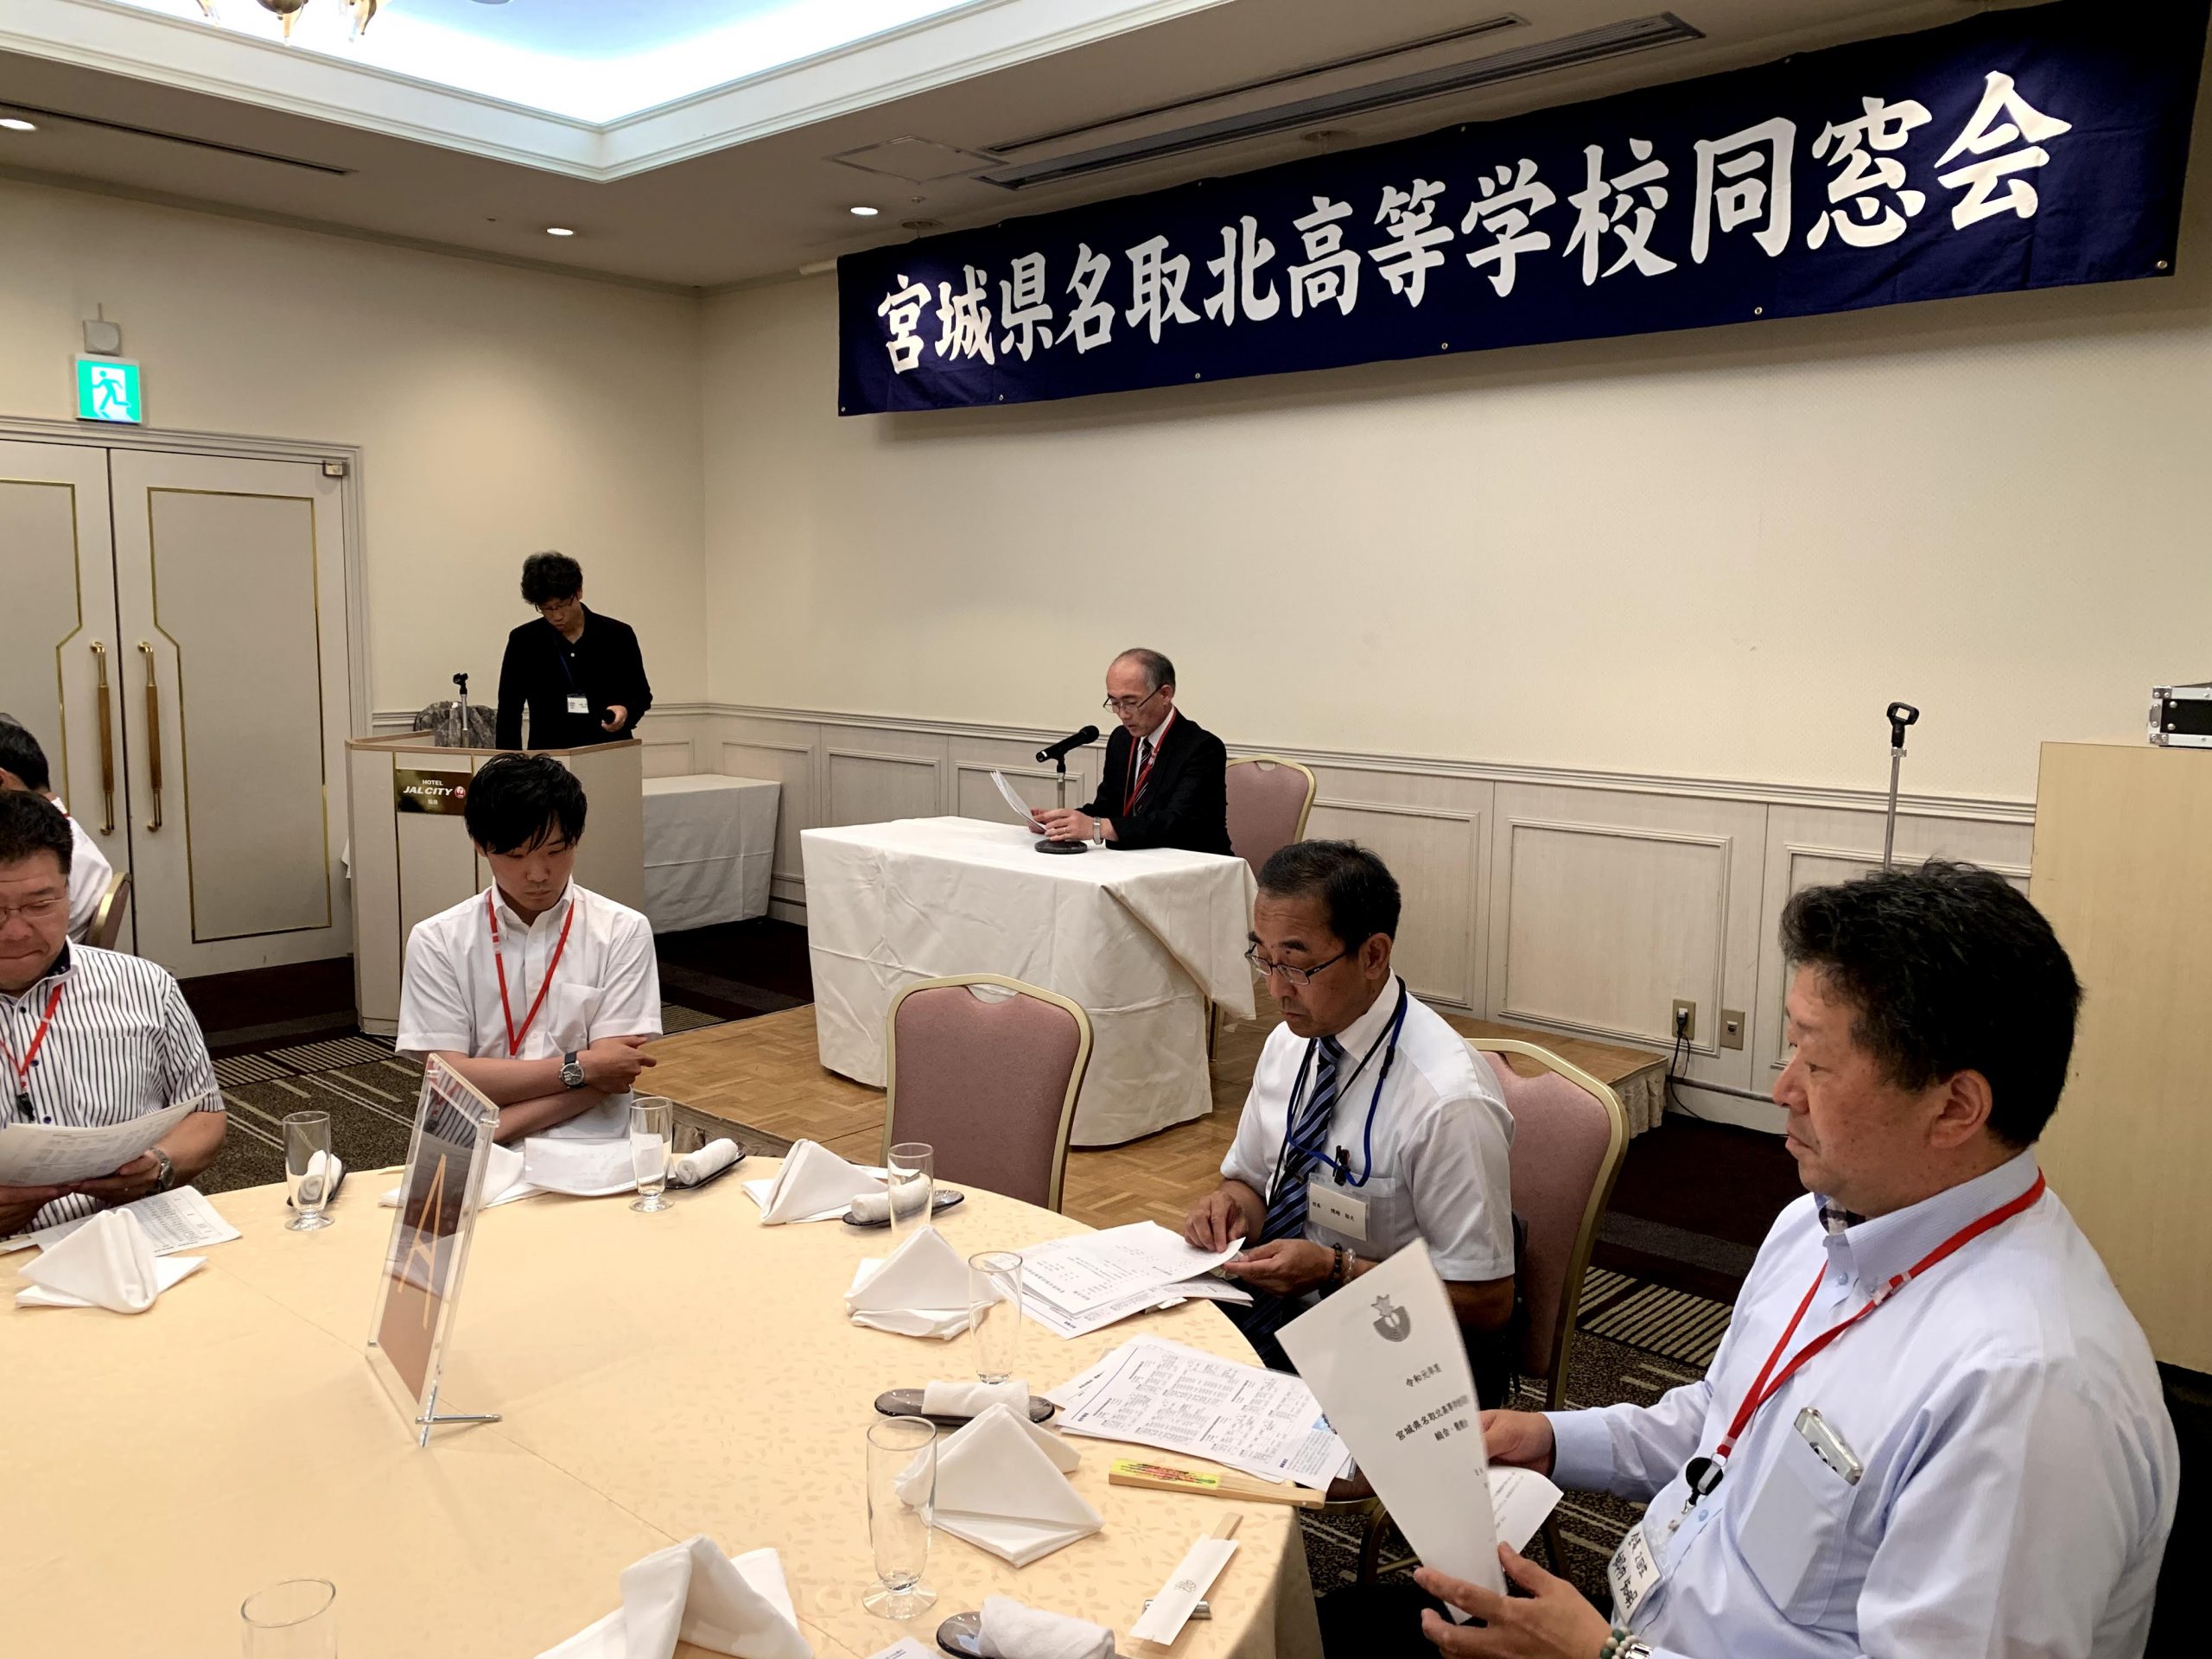 令和元年　8月10日　同窓会総会と同窓会が行われます。